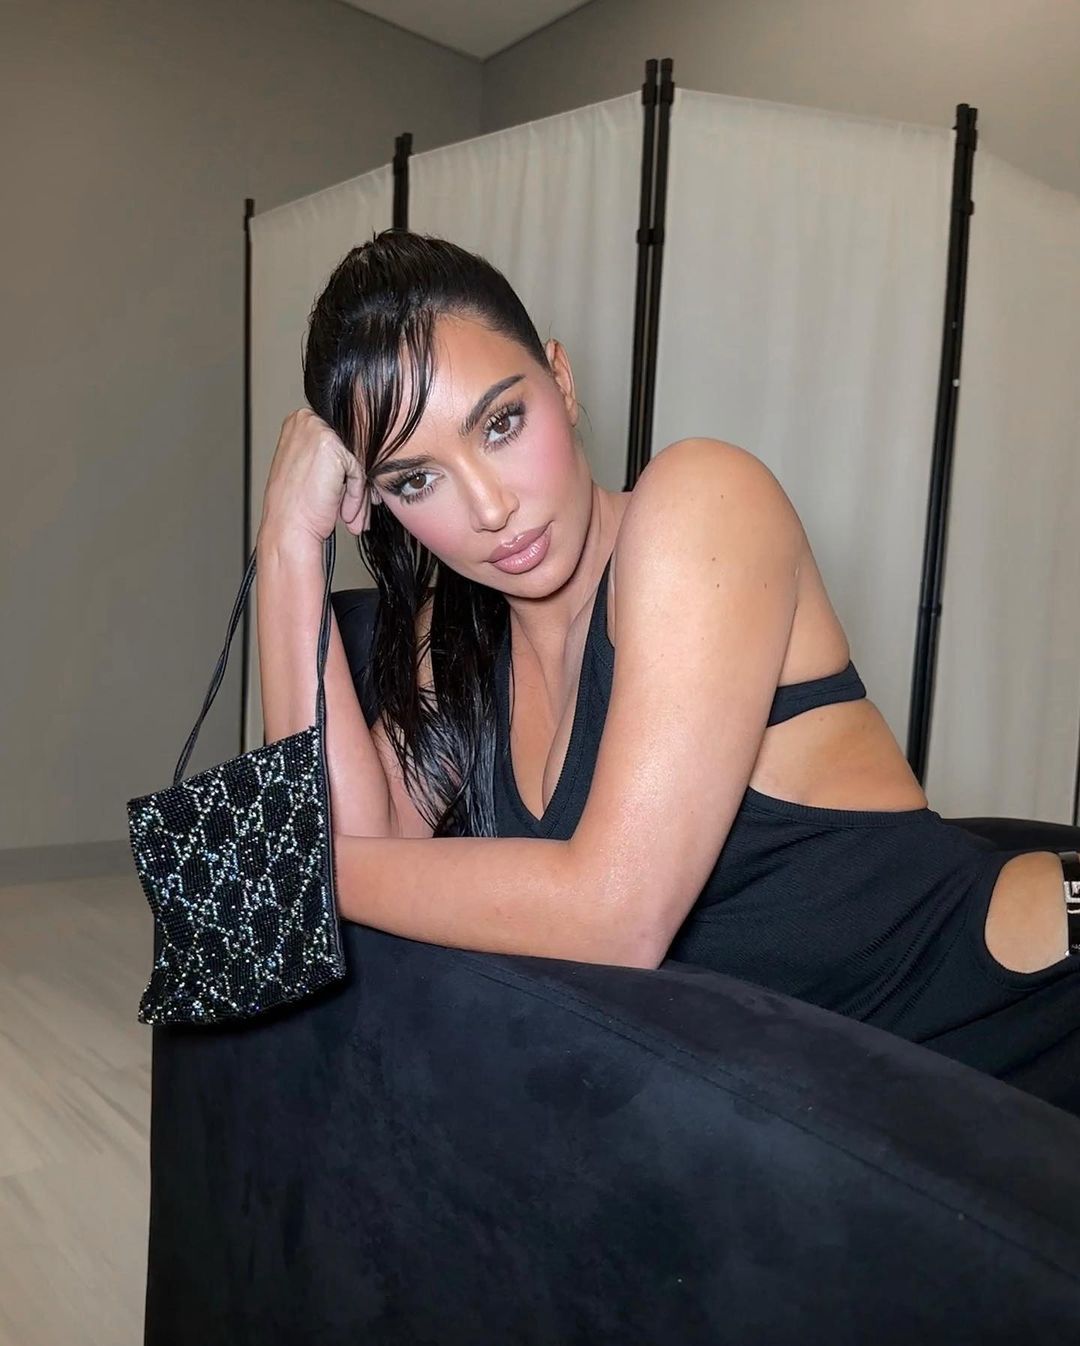 Kim Kardashian w czarnej sukience z wycięciami
Instagram/kimkardashian